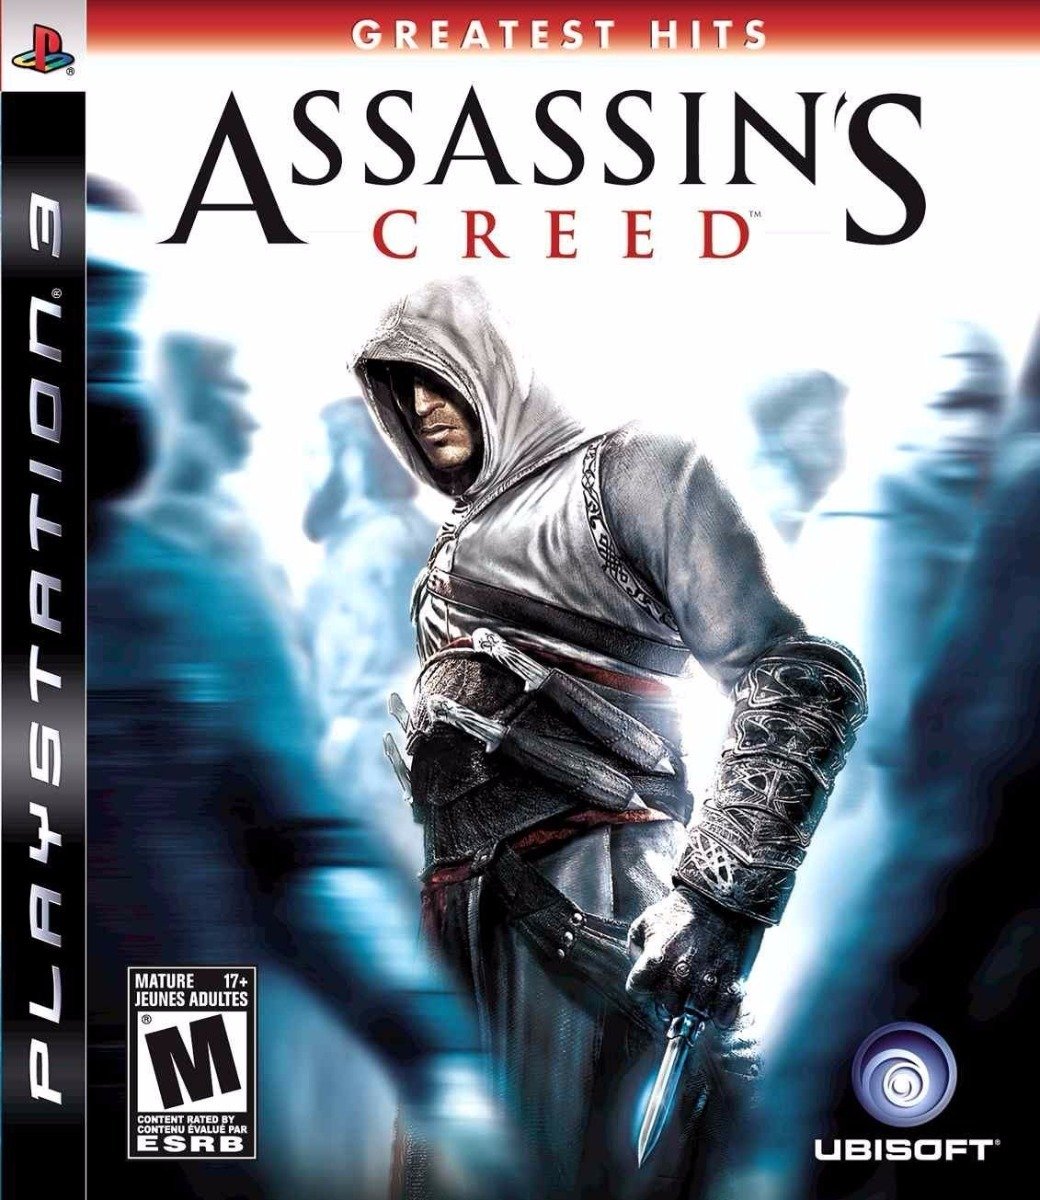 Jogo PS3 - Assassin's Creed III (Mídia Física) - FF Games